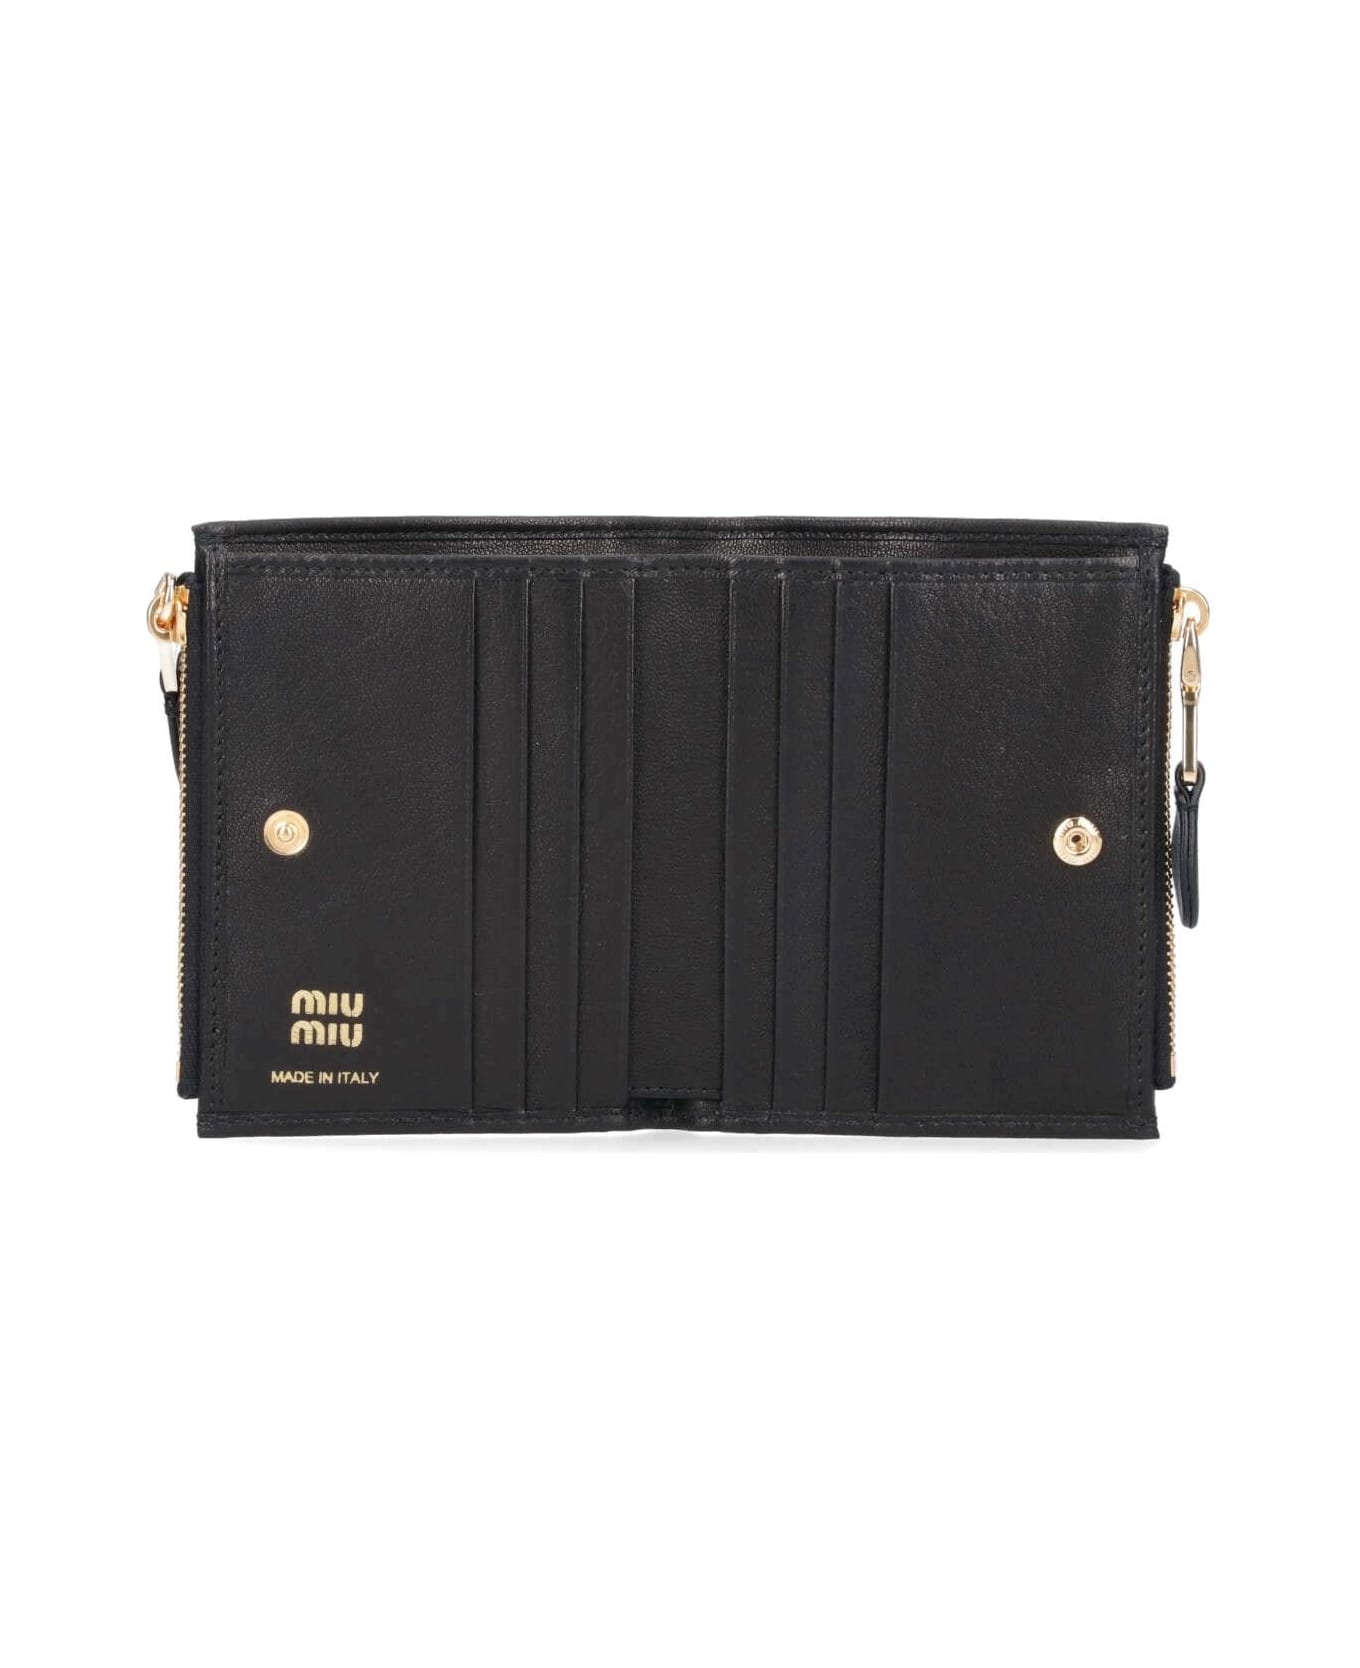 Miu Miu Wallet - Nero 財布